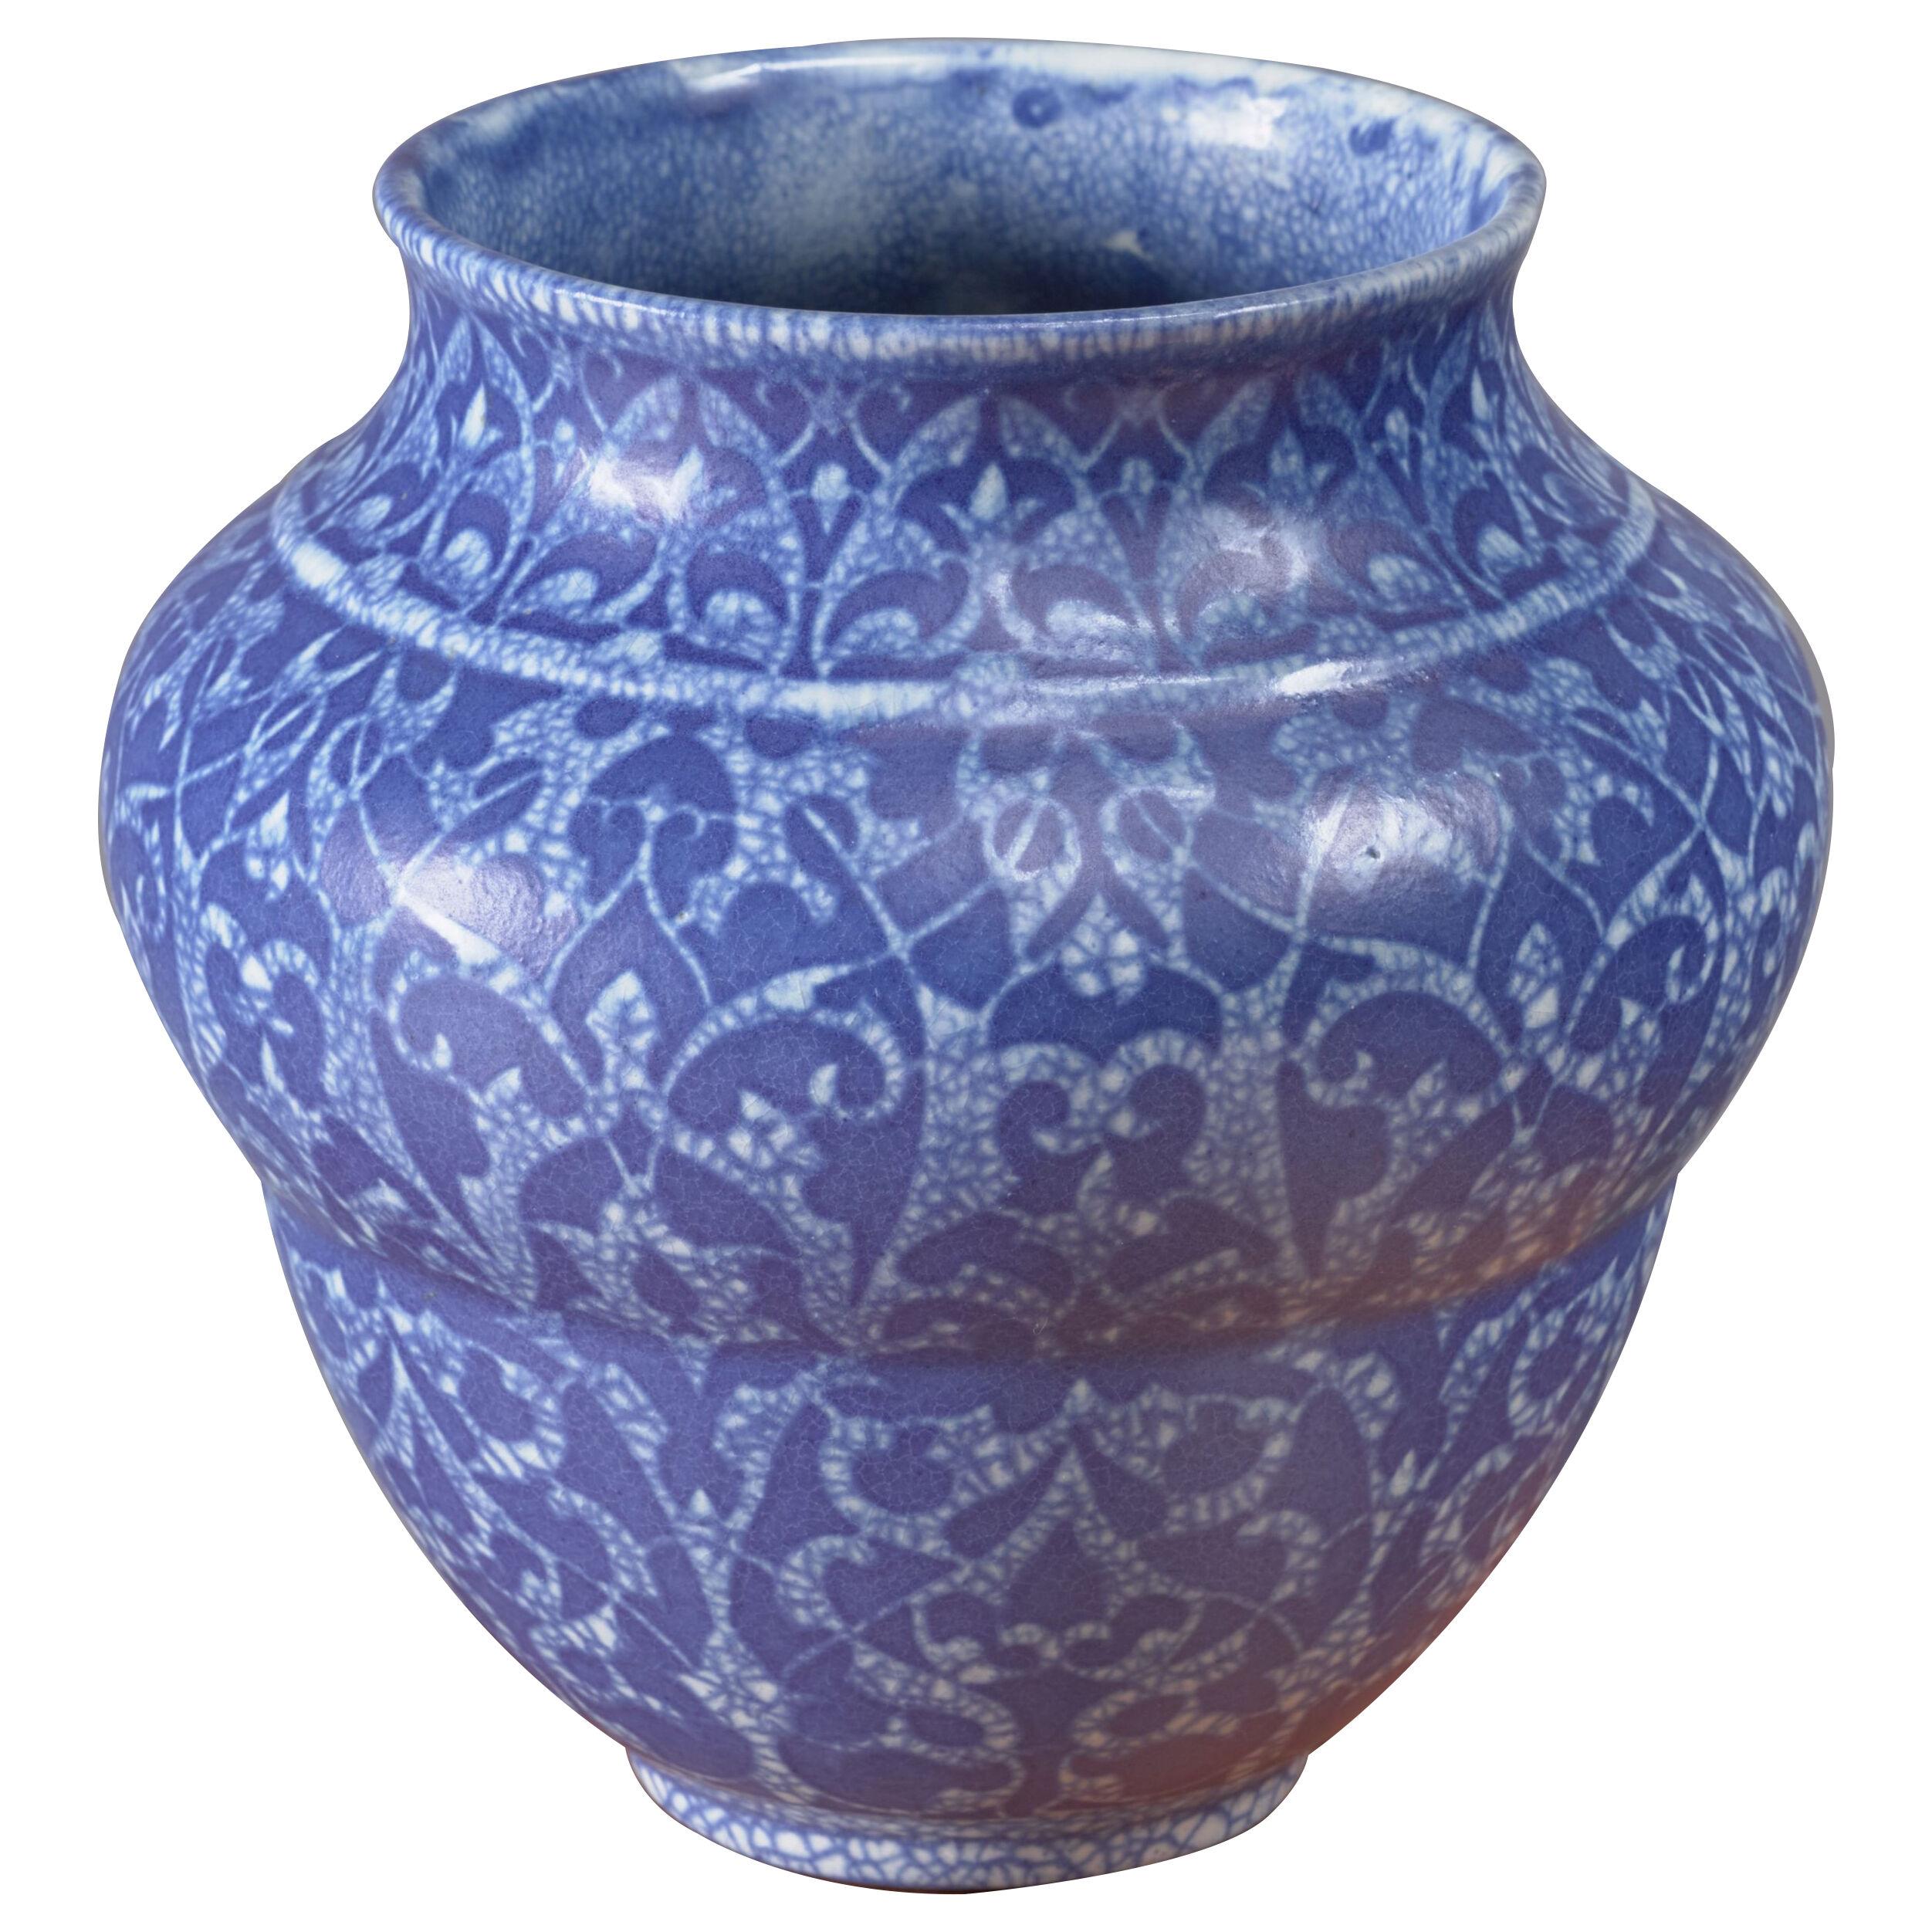 Velten Vordamm Art Deco Crackle Glaze Ceramic Vase, Germany, 1920s